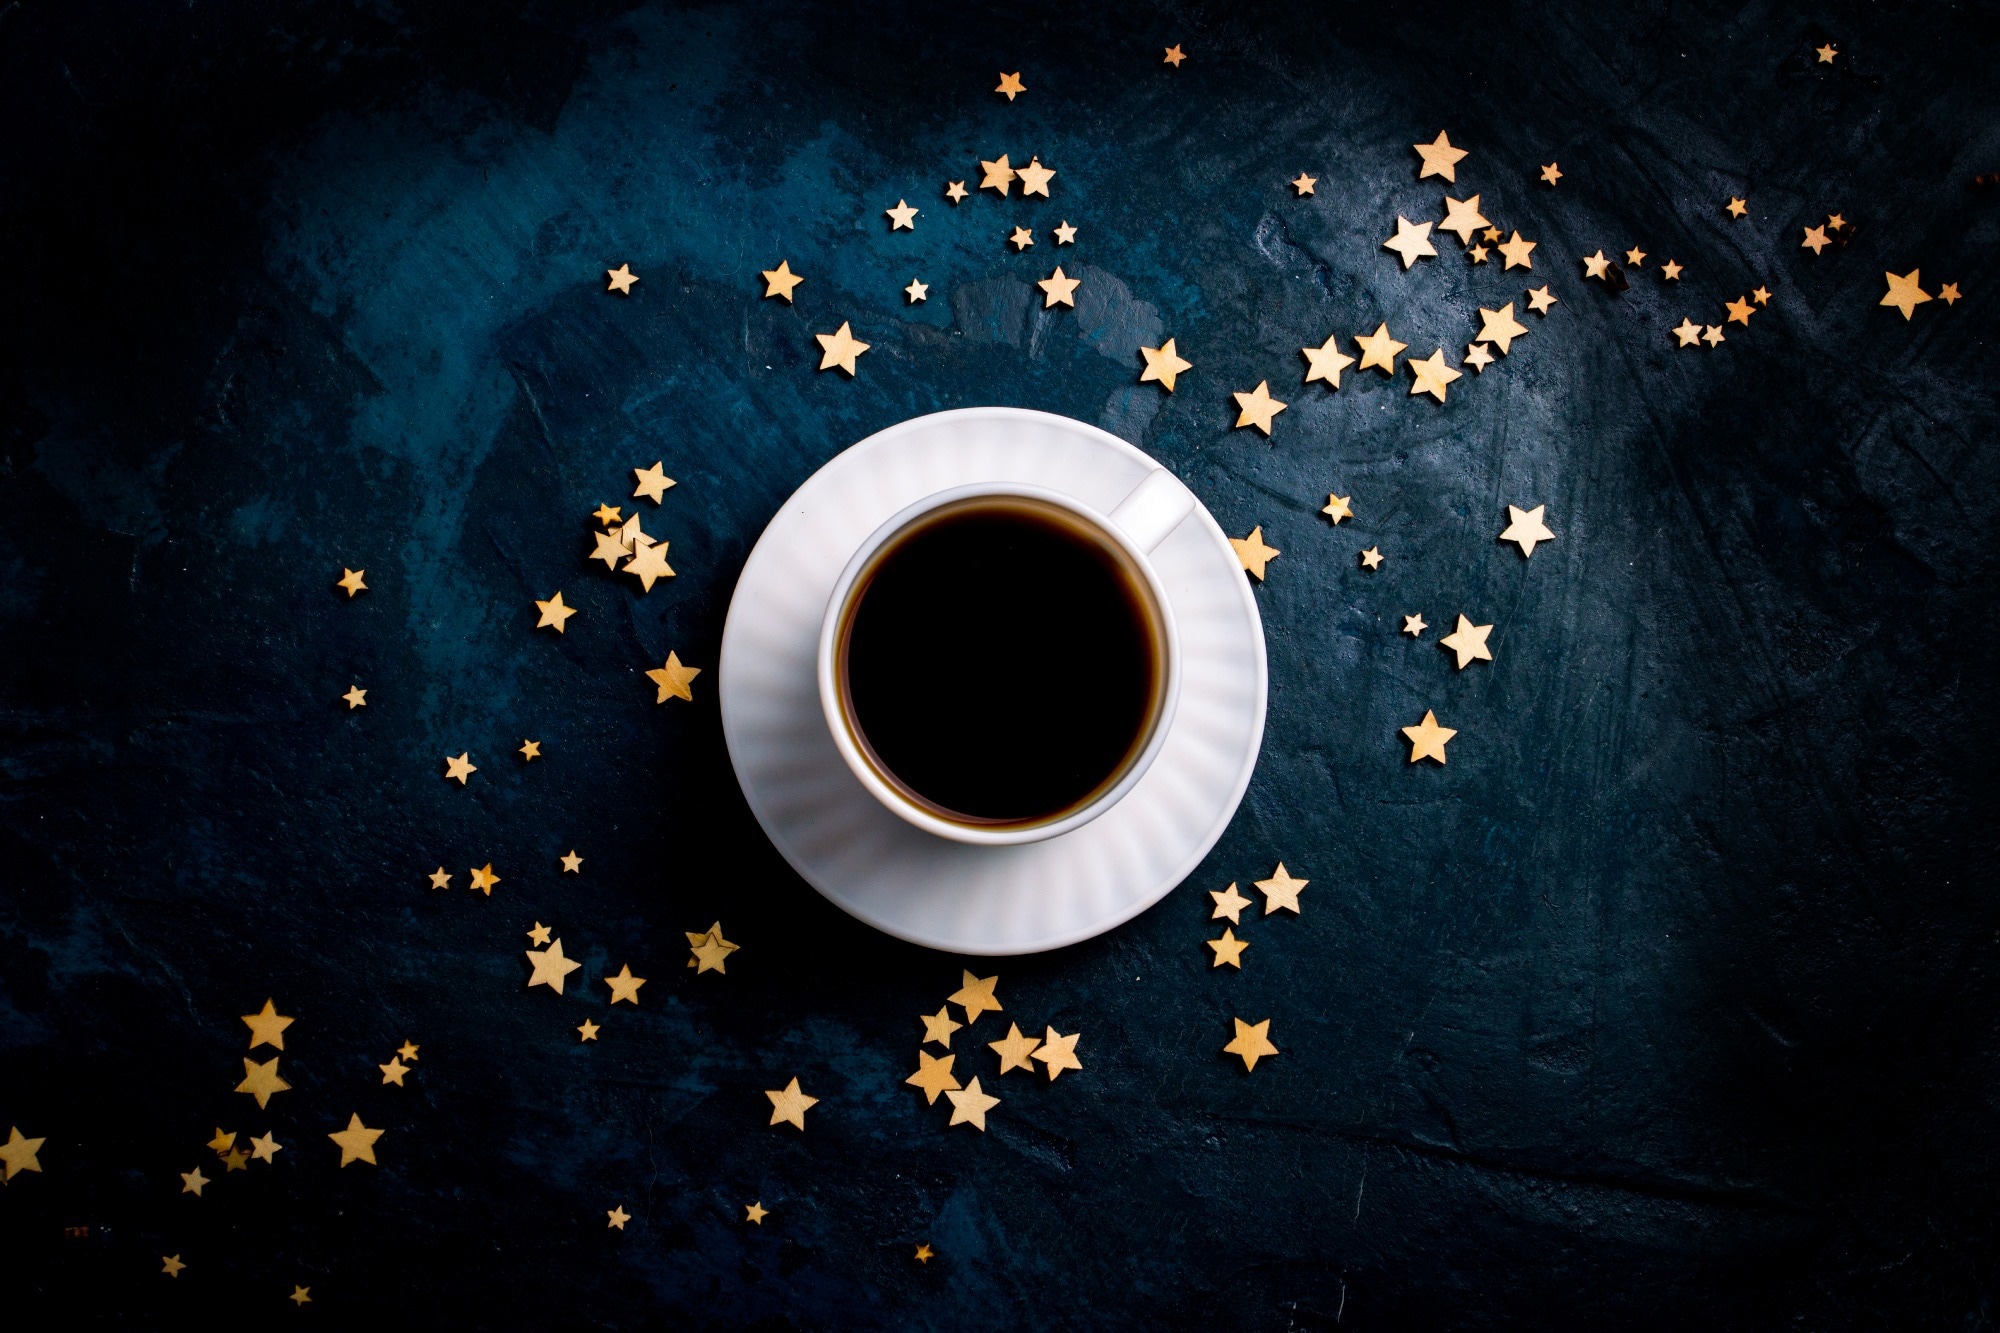 Badanie: Kawa, herbata i kakao w zapobieganiu otyłości: mechanizmy działania i perspektywy na przyszłość.  Źródło obrazu: akcje SAG / Shutterstock